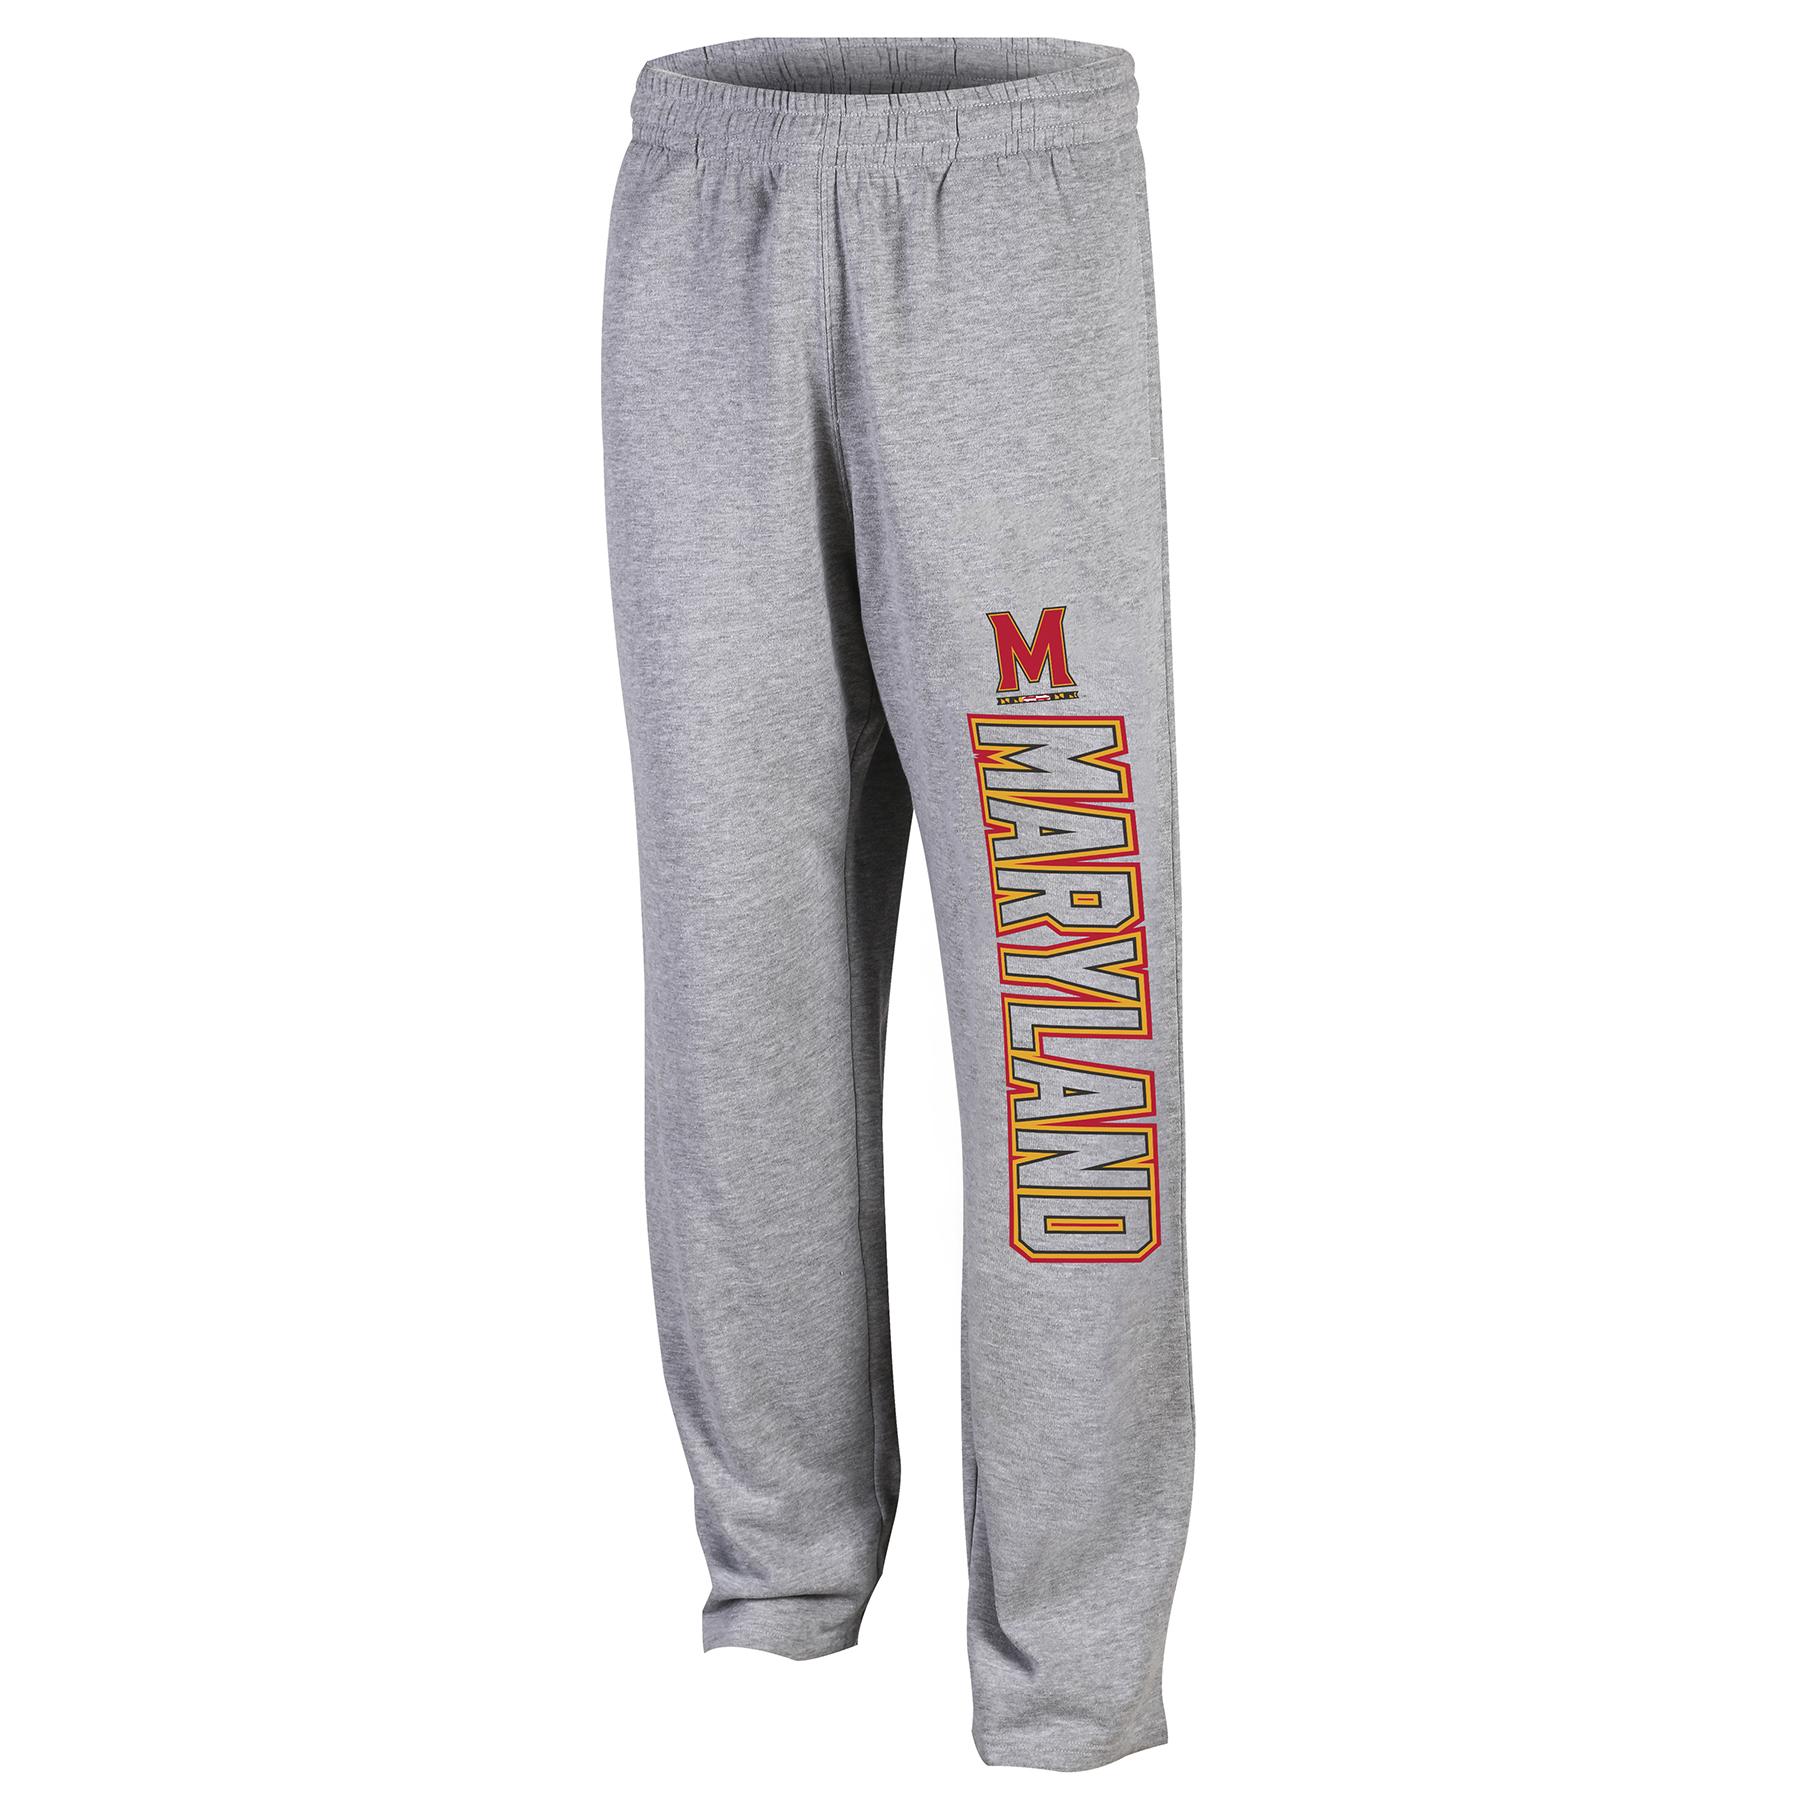 NCAA Men's Sweatpants - University of Maryland Terrapins